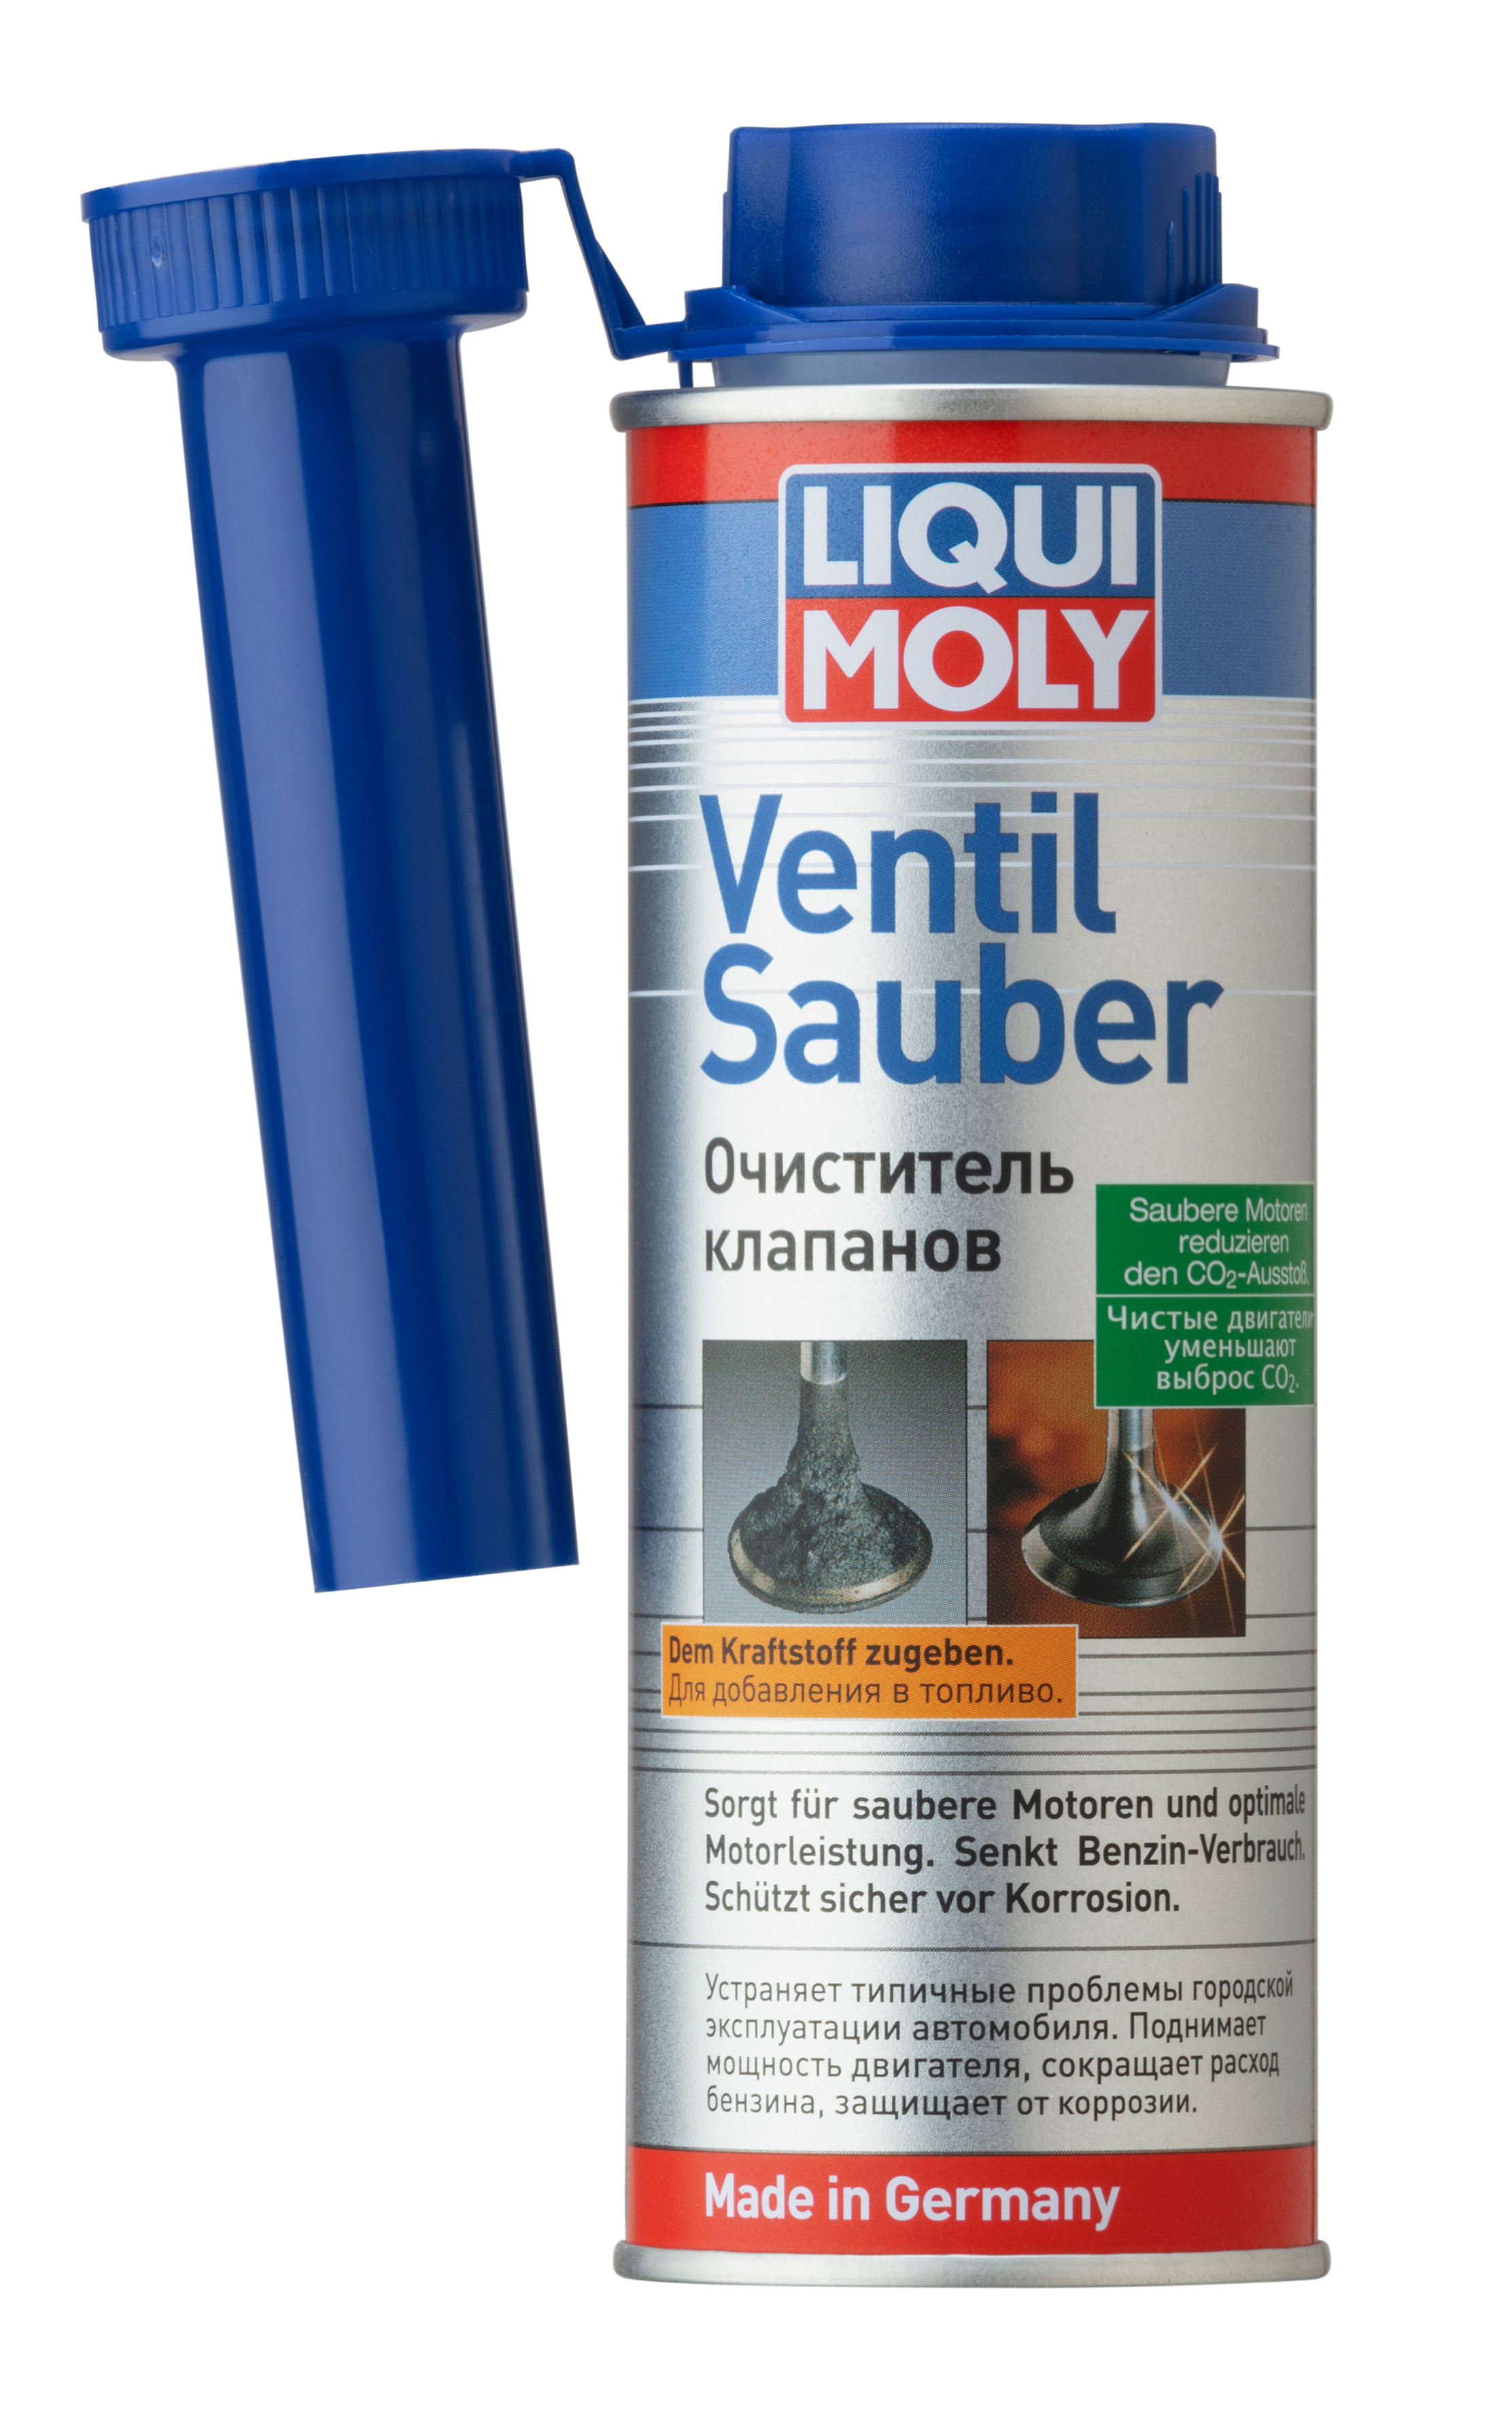 LIQUI MOLY Очиститель клапанов Ventil Sauber (бензин) 250мл.